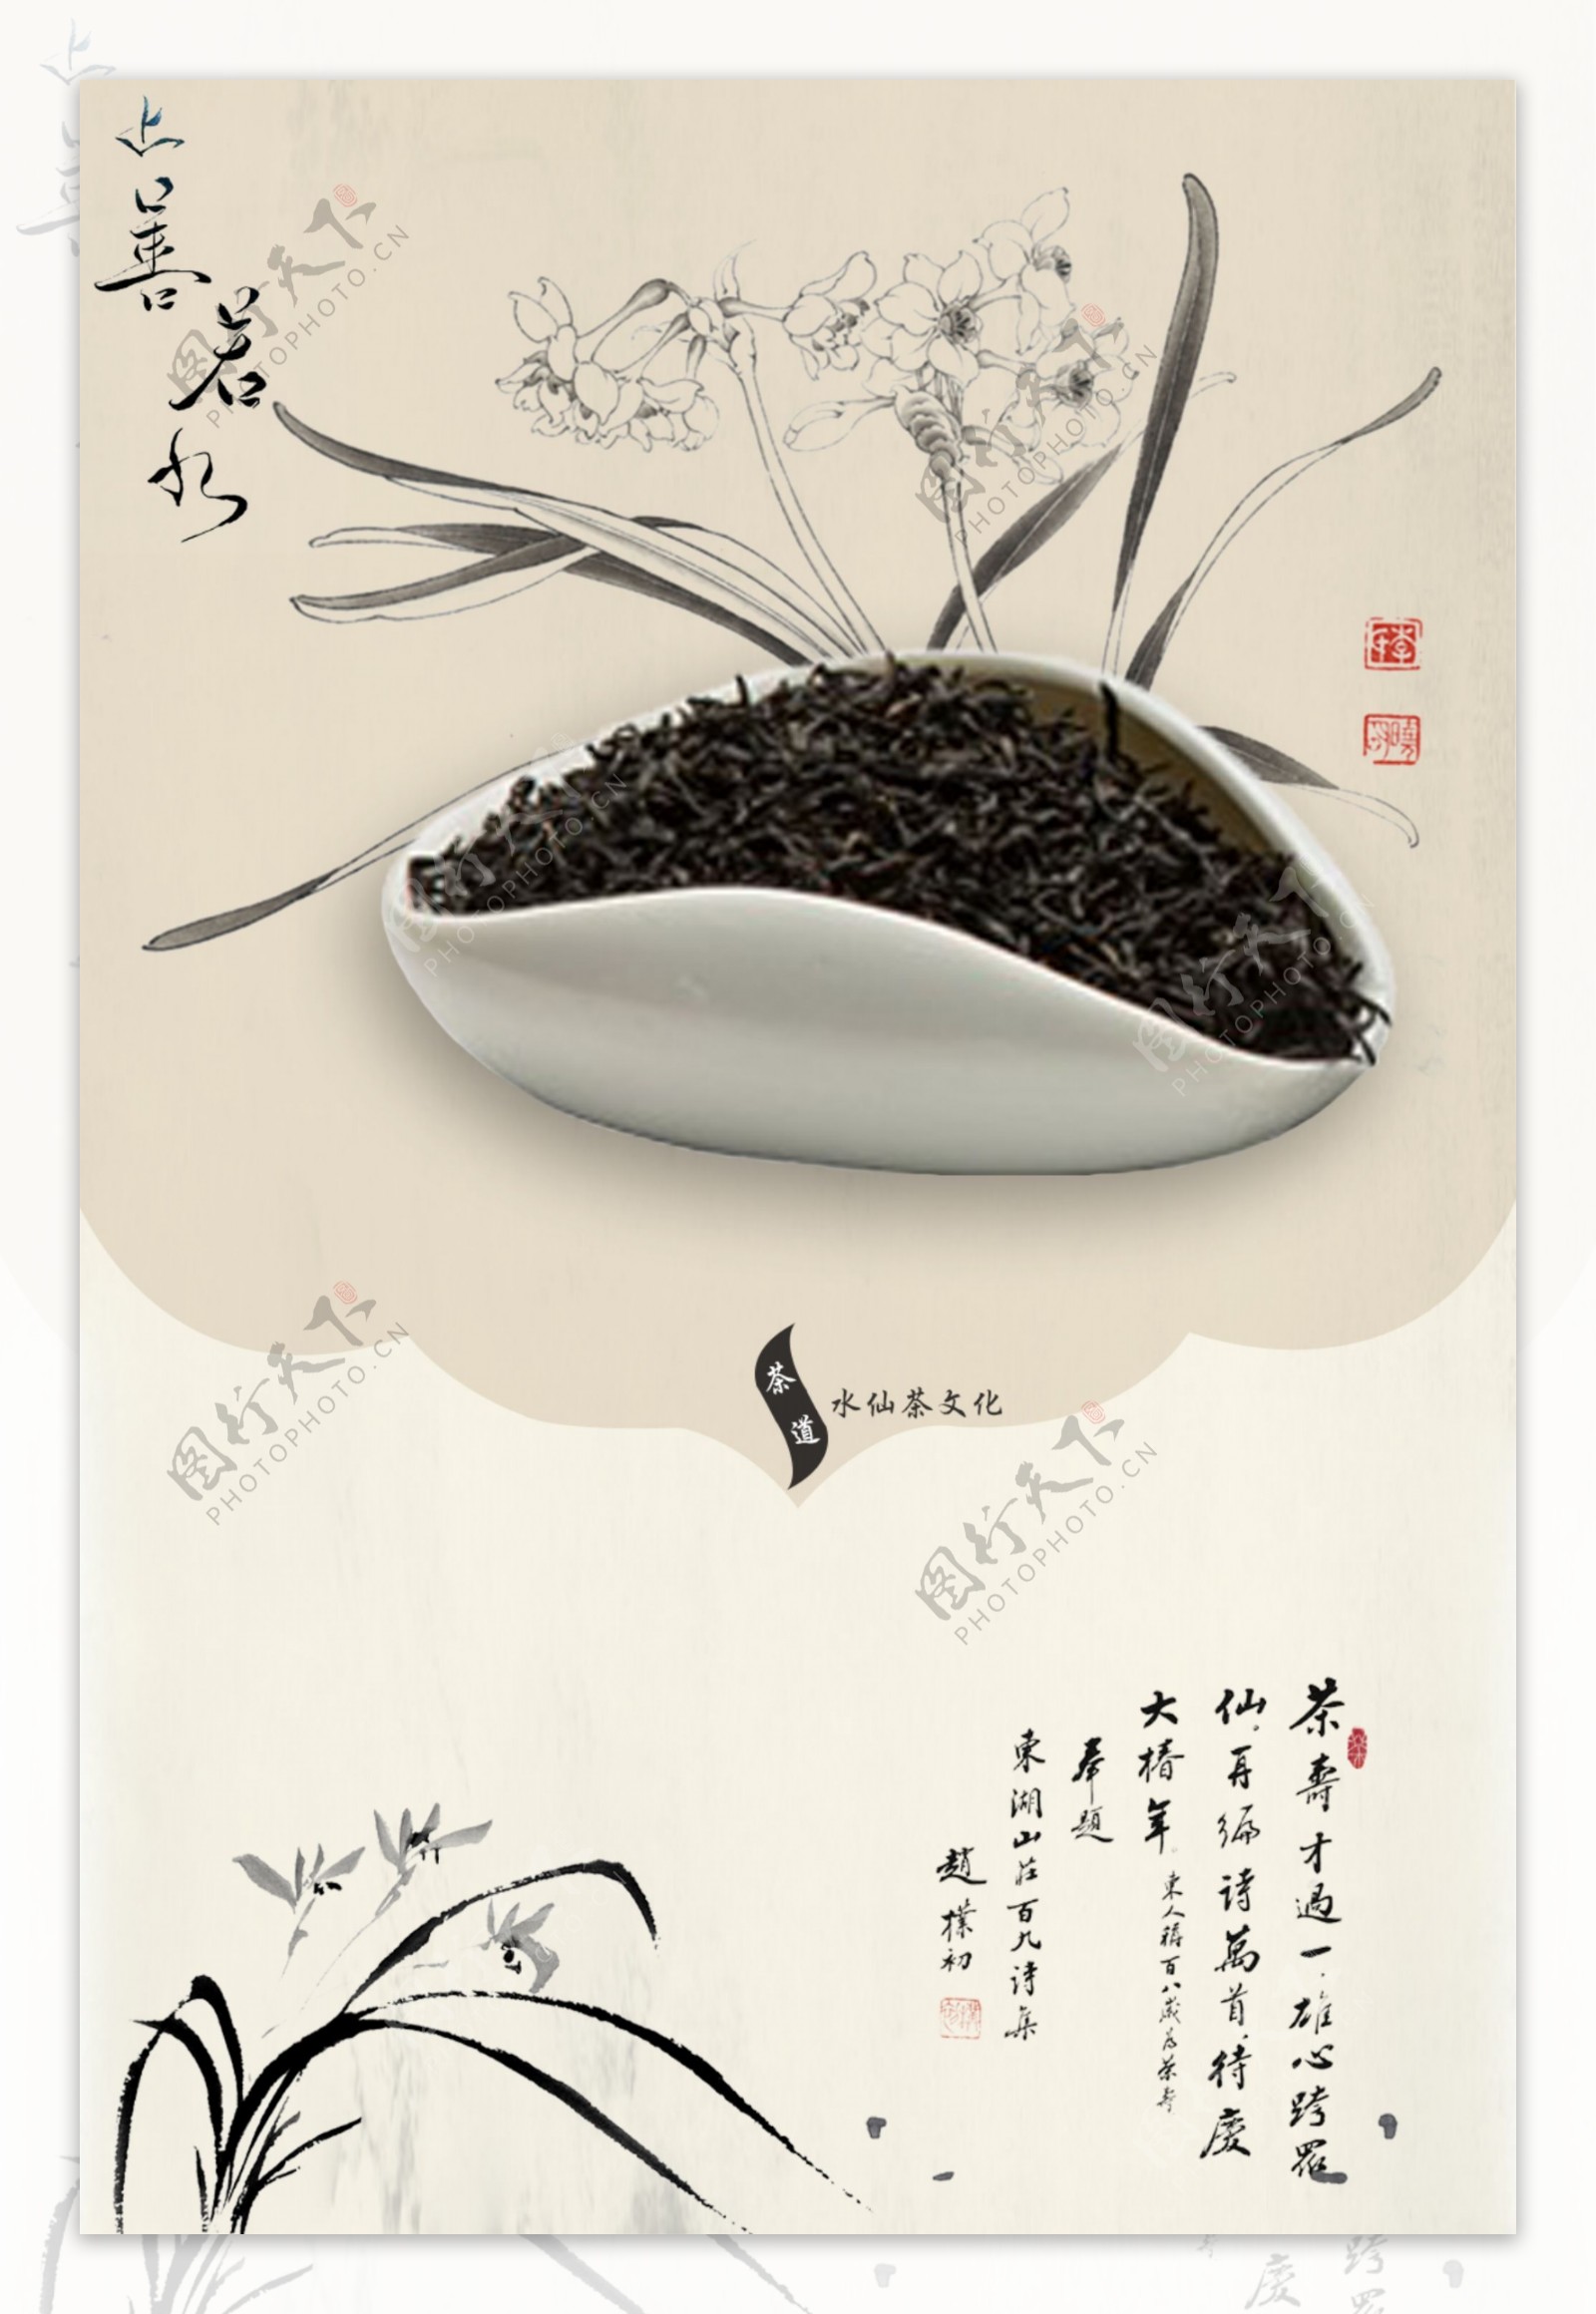 中国茶韵文化的渊源流长